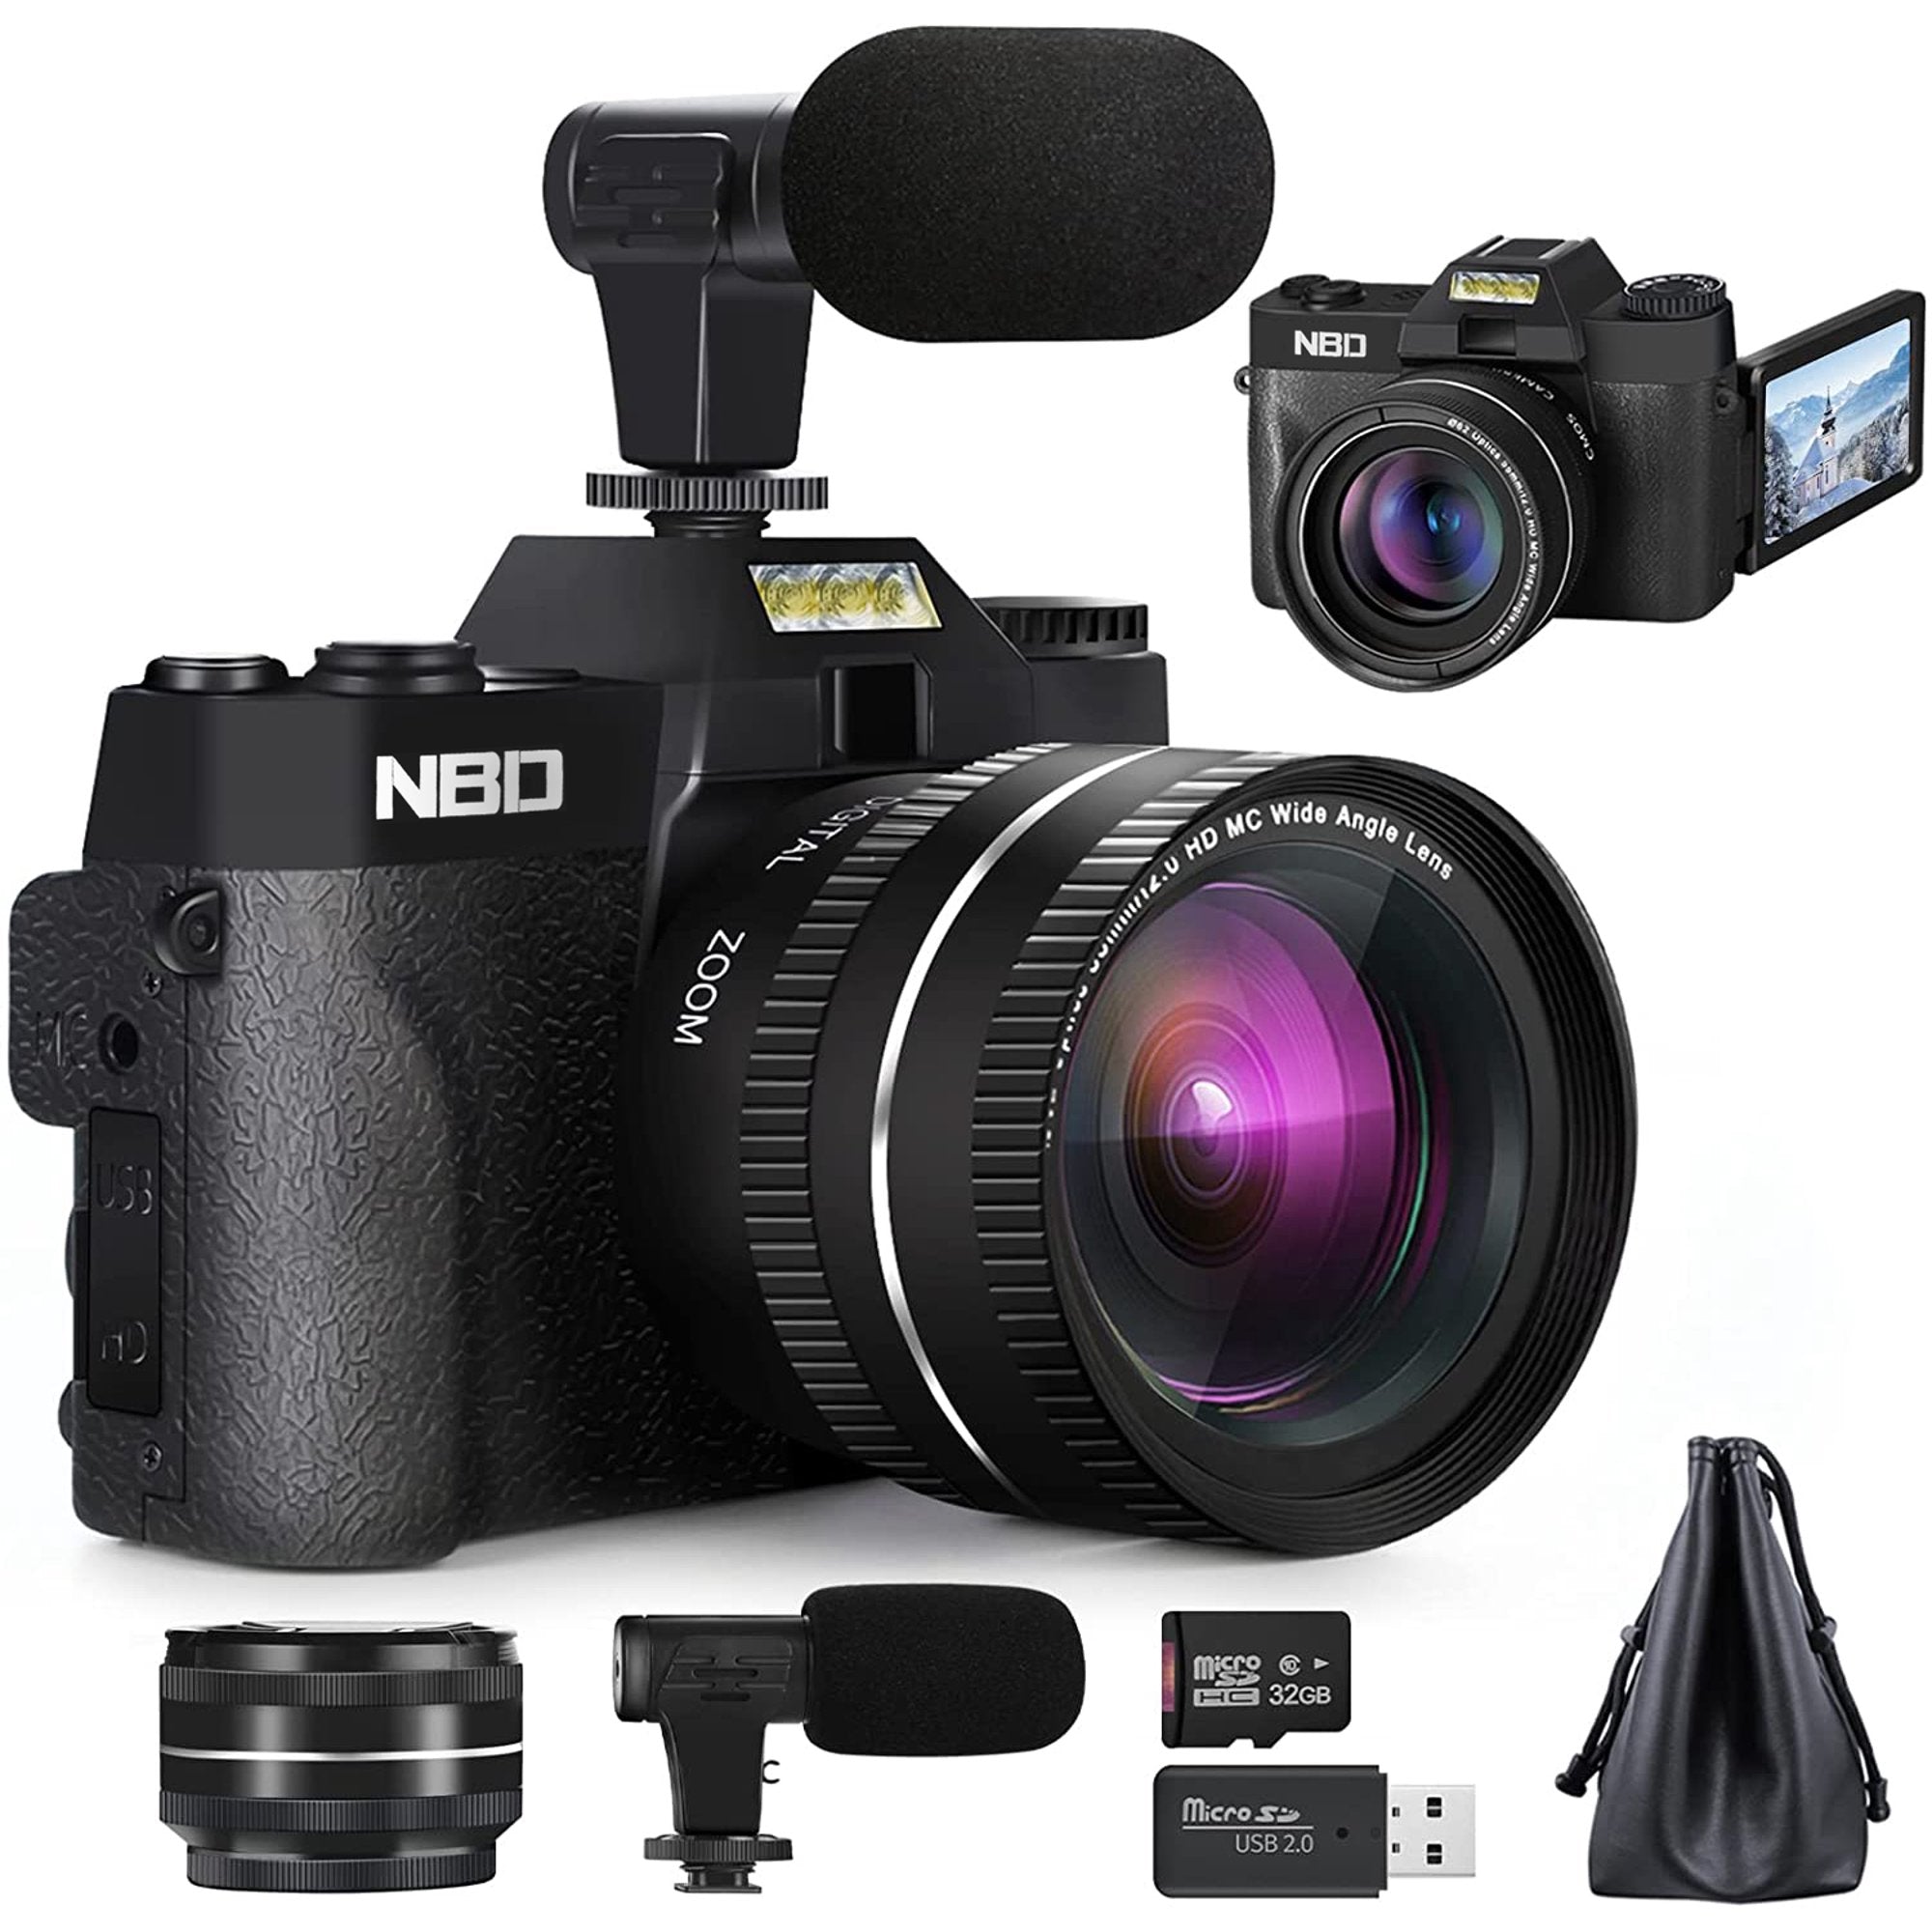 Digital Camera, 4K Video NBD Cameras